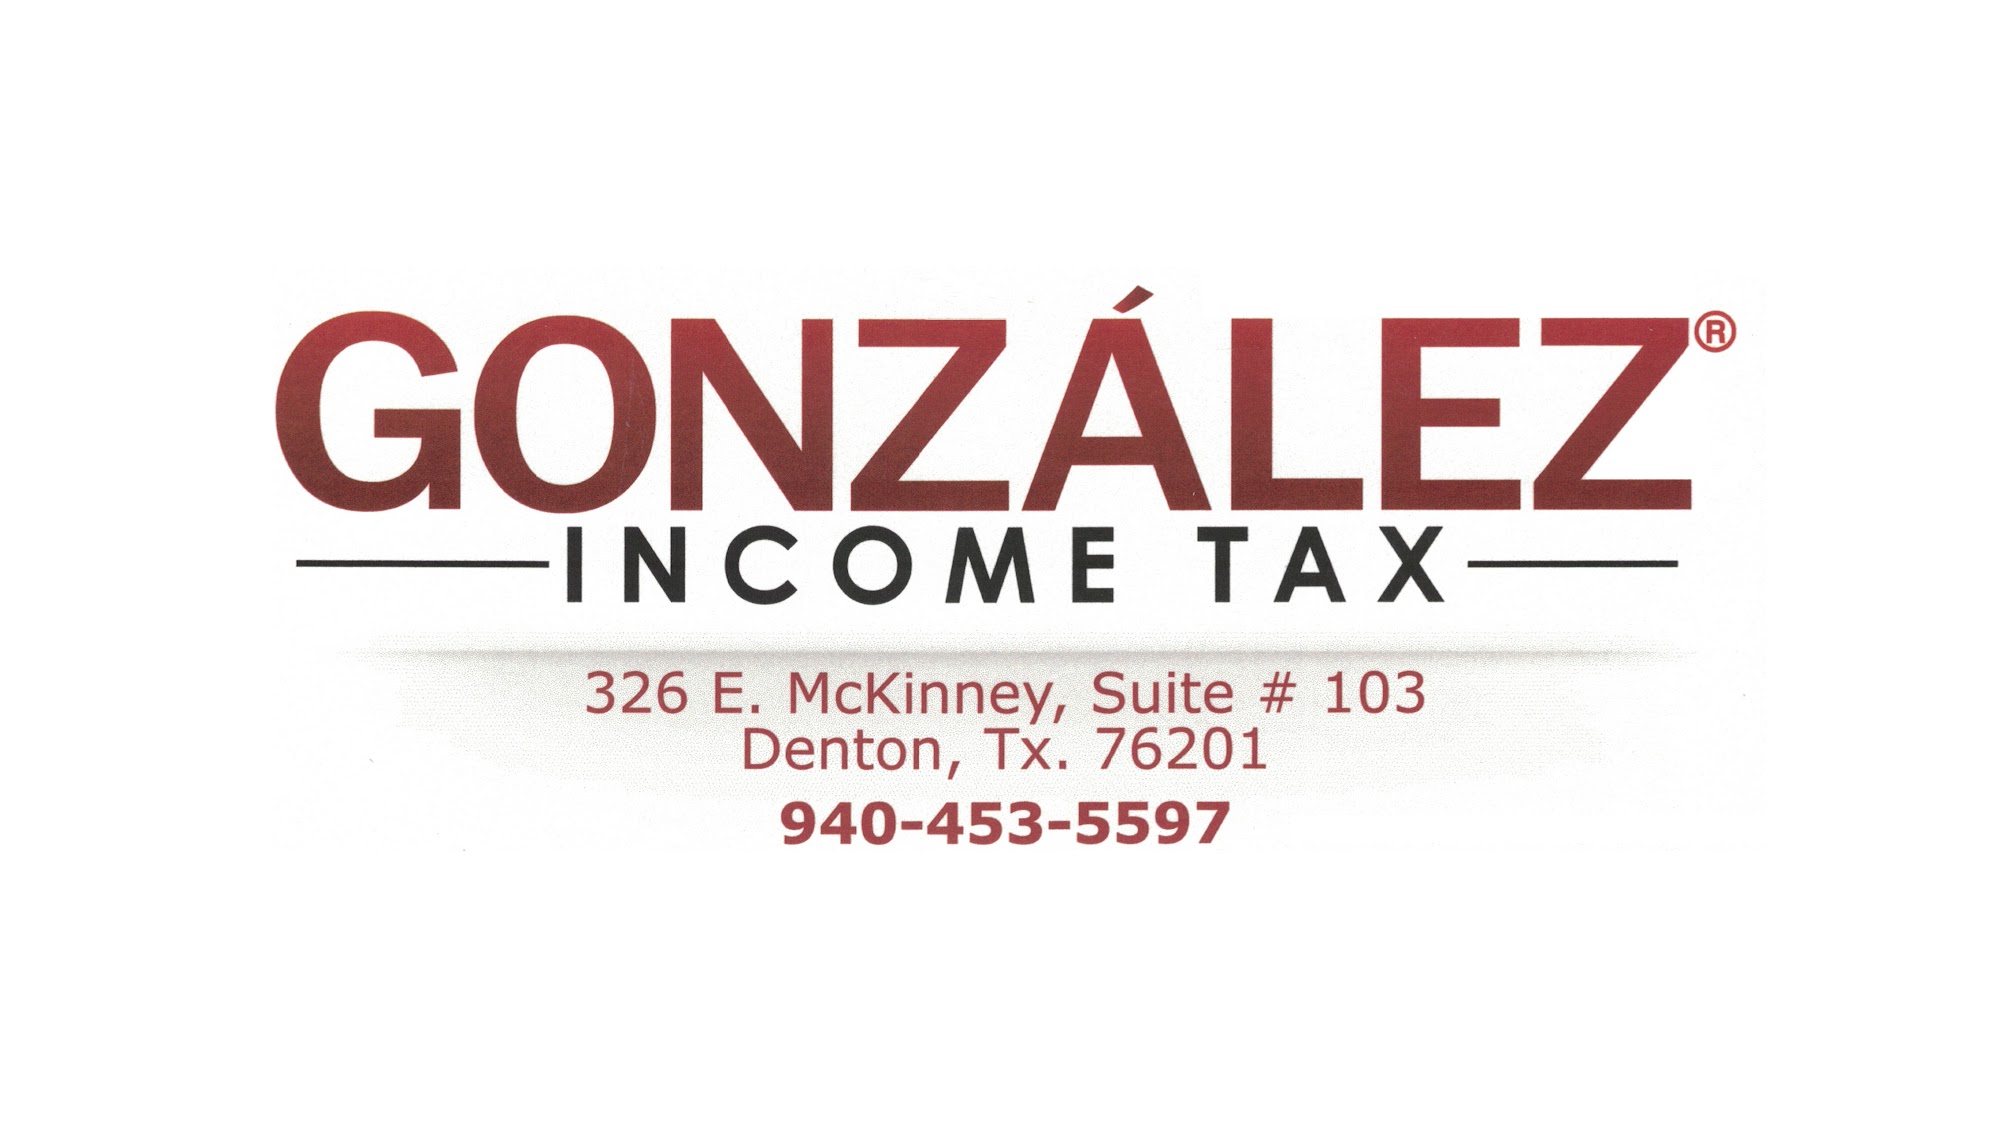 Gonzalez Income Tax